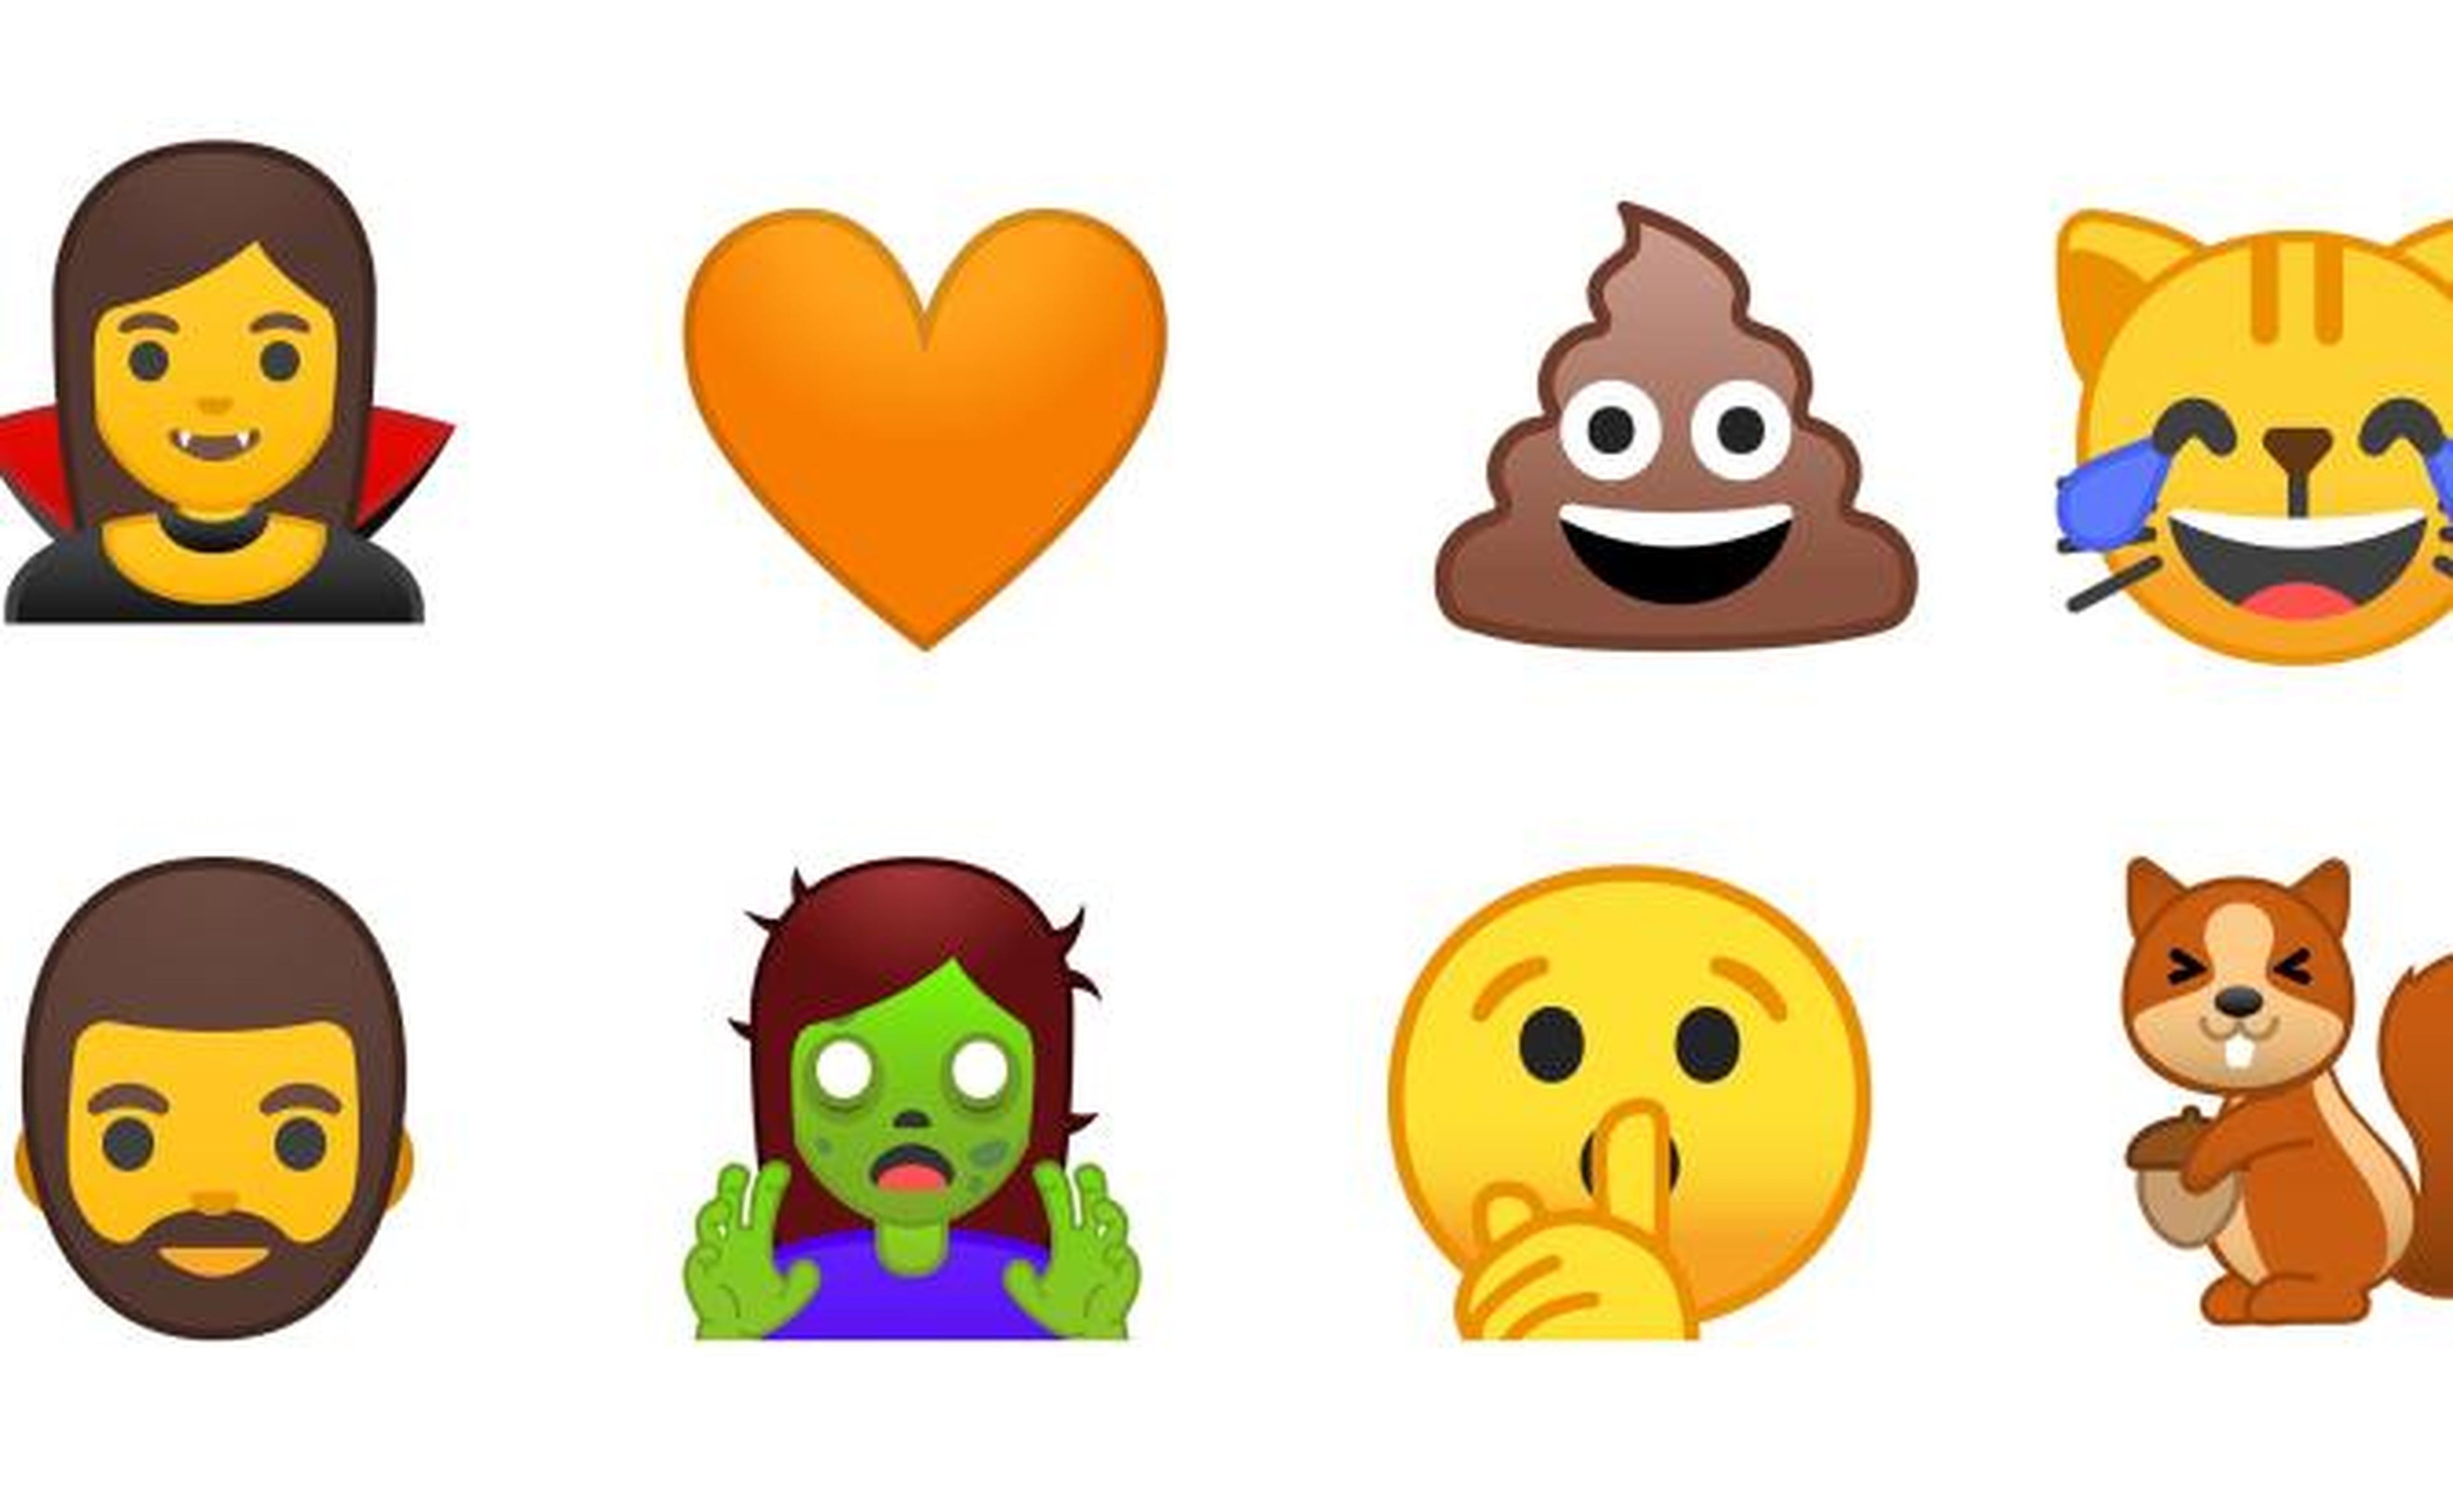 Google rediseñará sus peores emojis en la versión Android O